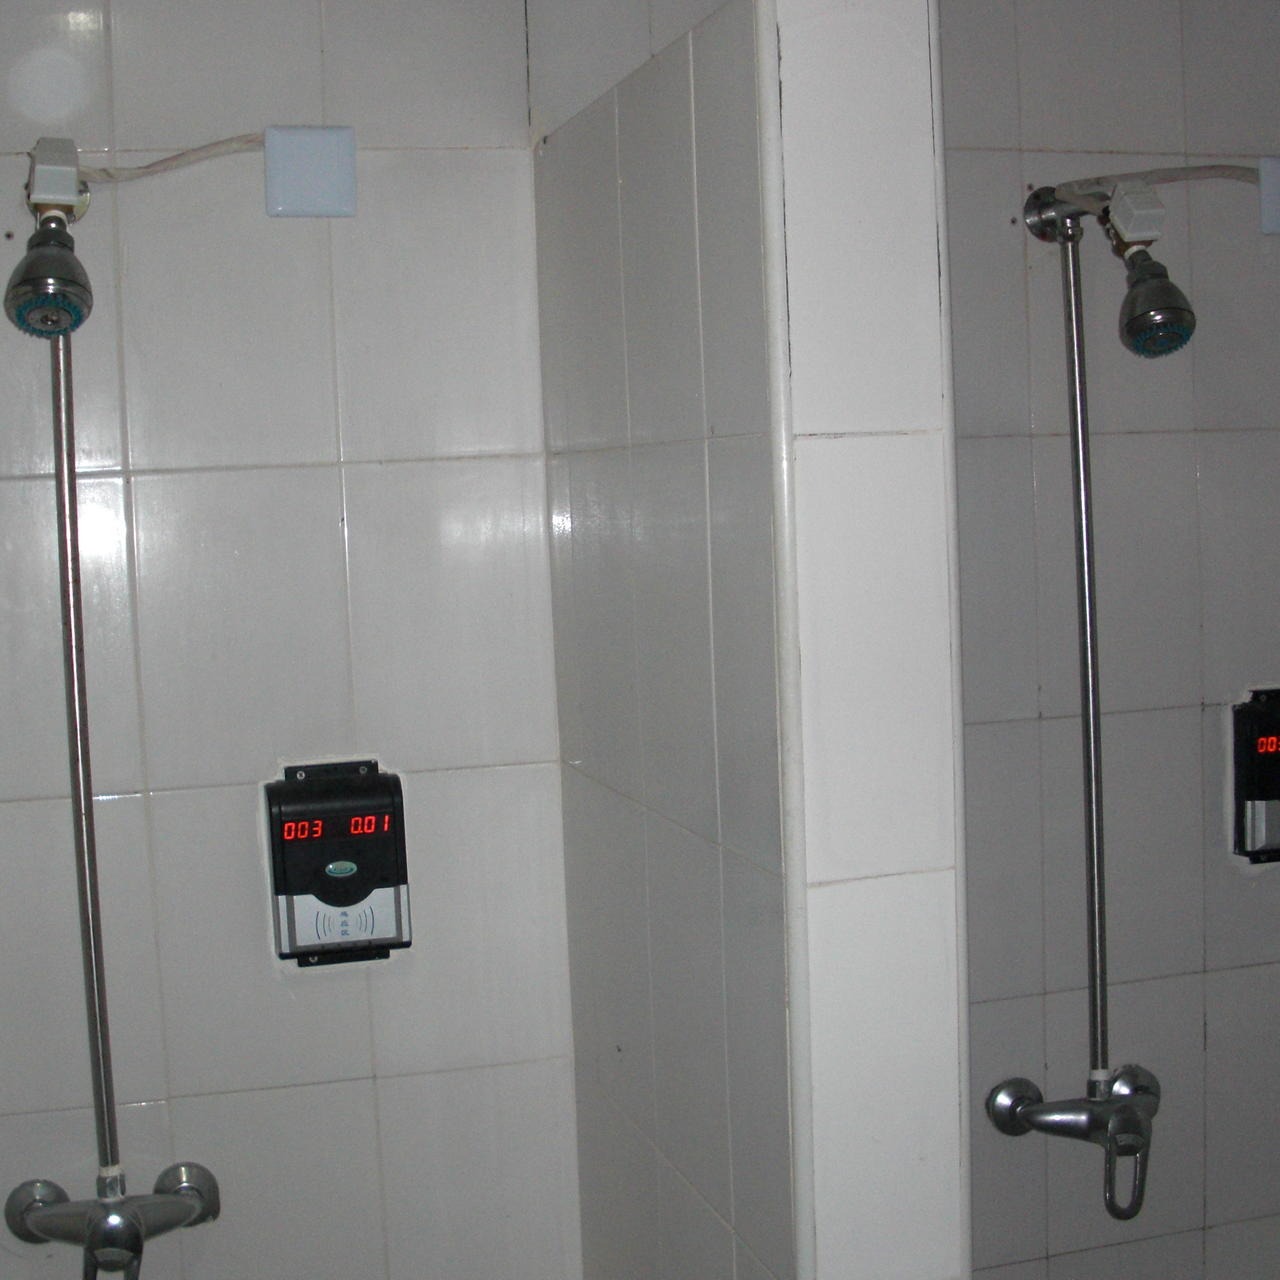 兴天下HF-660IC卡控水器淋浴打卡系统员工浴室节水系统